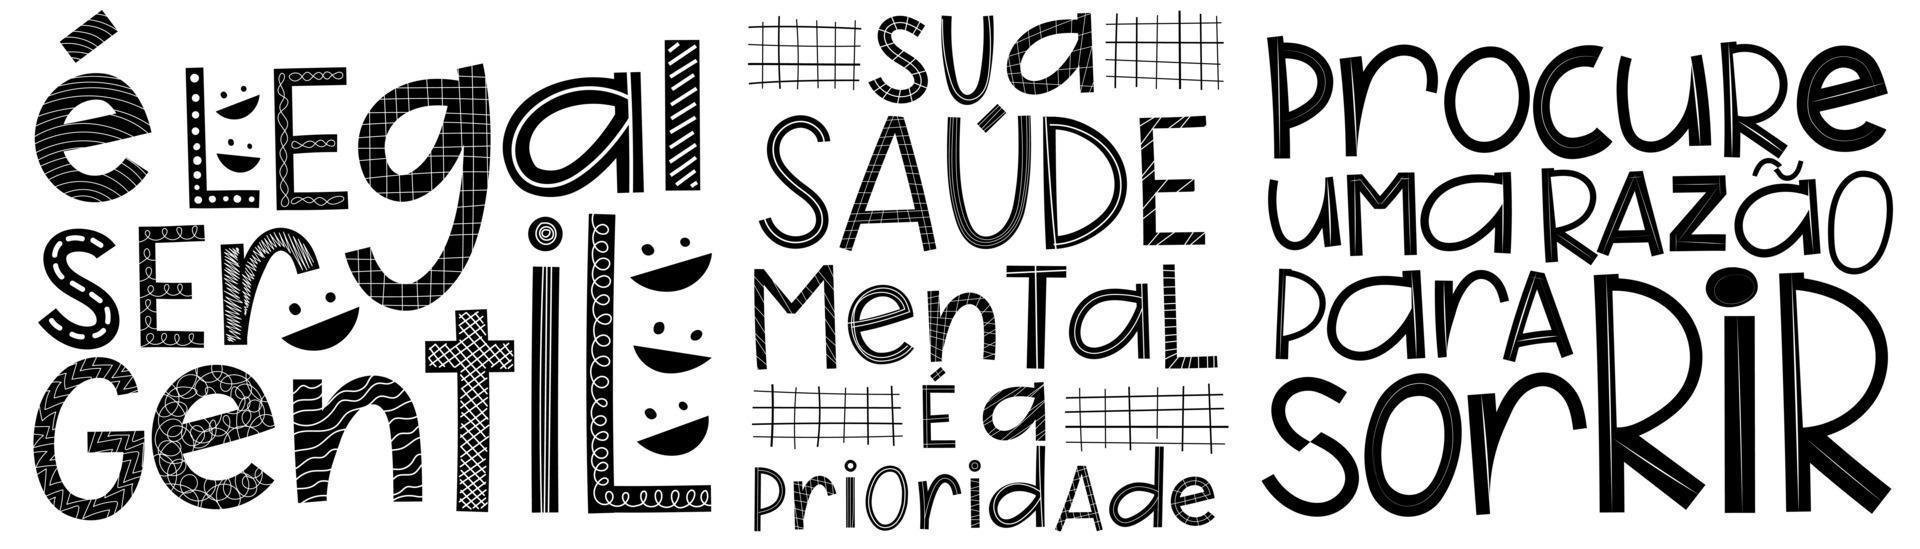 tres carteles en portugués brasileño. traducción - es genial ser amable - tu salud mental es una prioridad, encuentra una razón para sonreír. vector